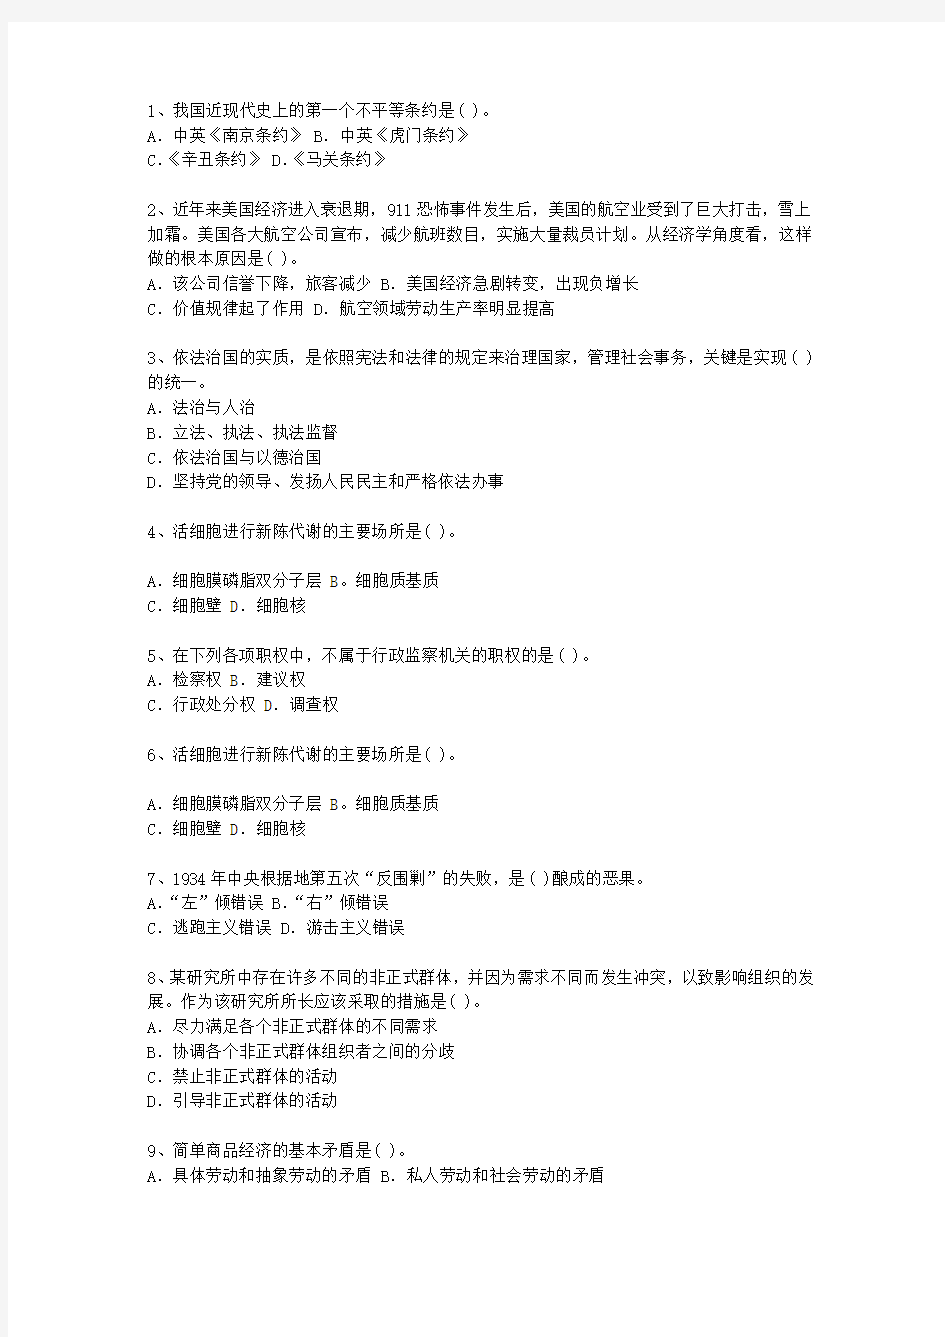 2013四川省公选(公开选拔)领导干部考试答题技巧